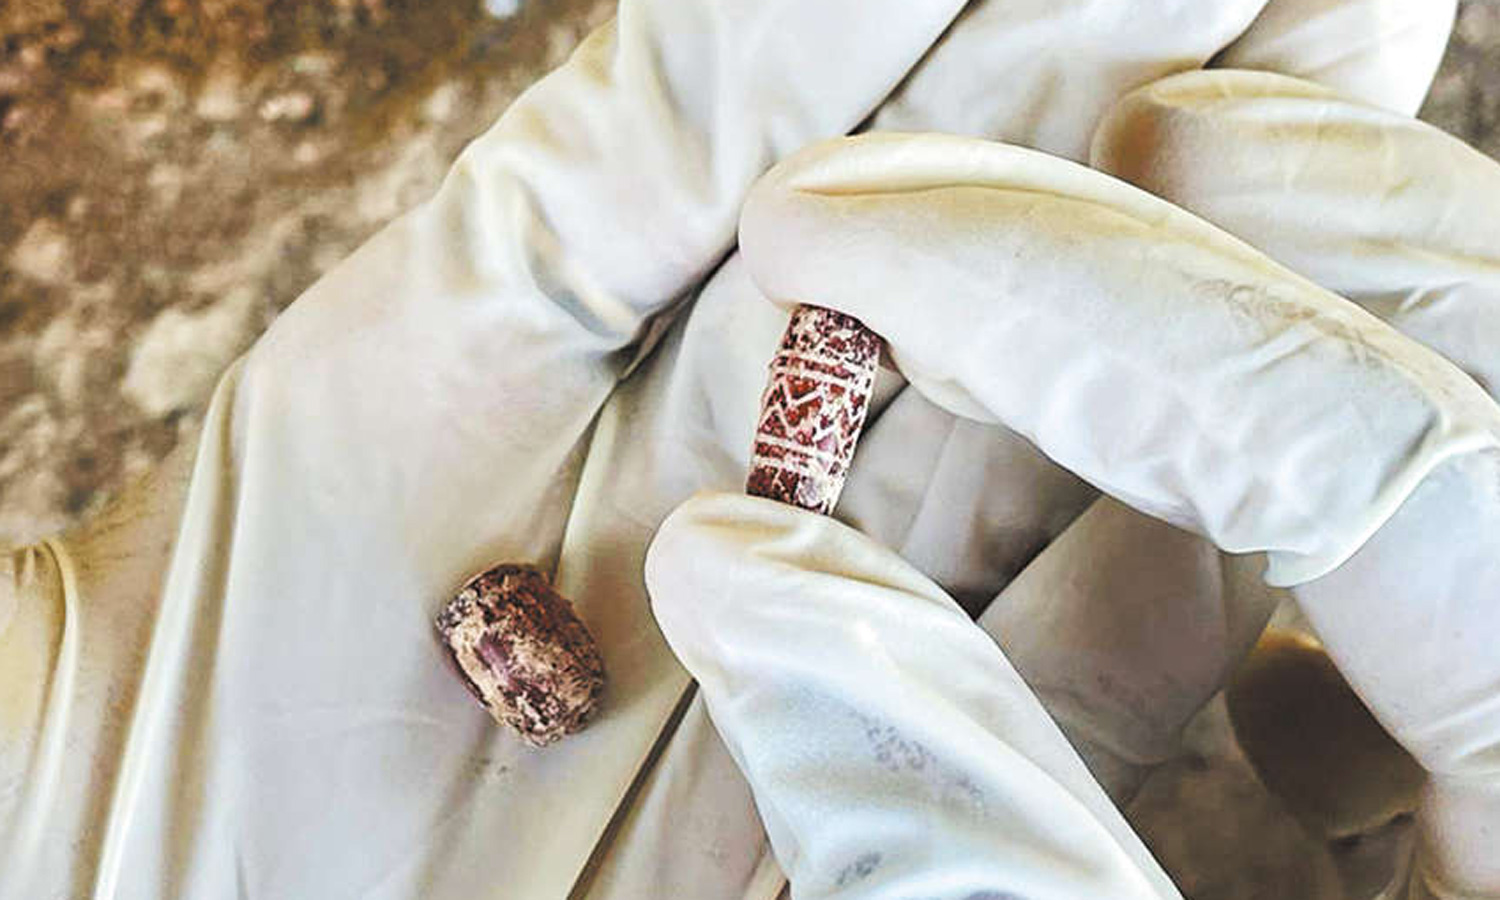 கீழடி அகழாய்வில் பவள மணிகள் கண்டெடுப்பு: 2,500 ஆண்டுகள் பழமையானது